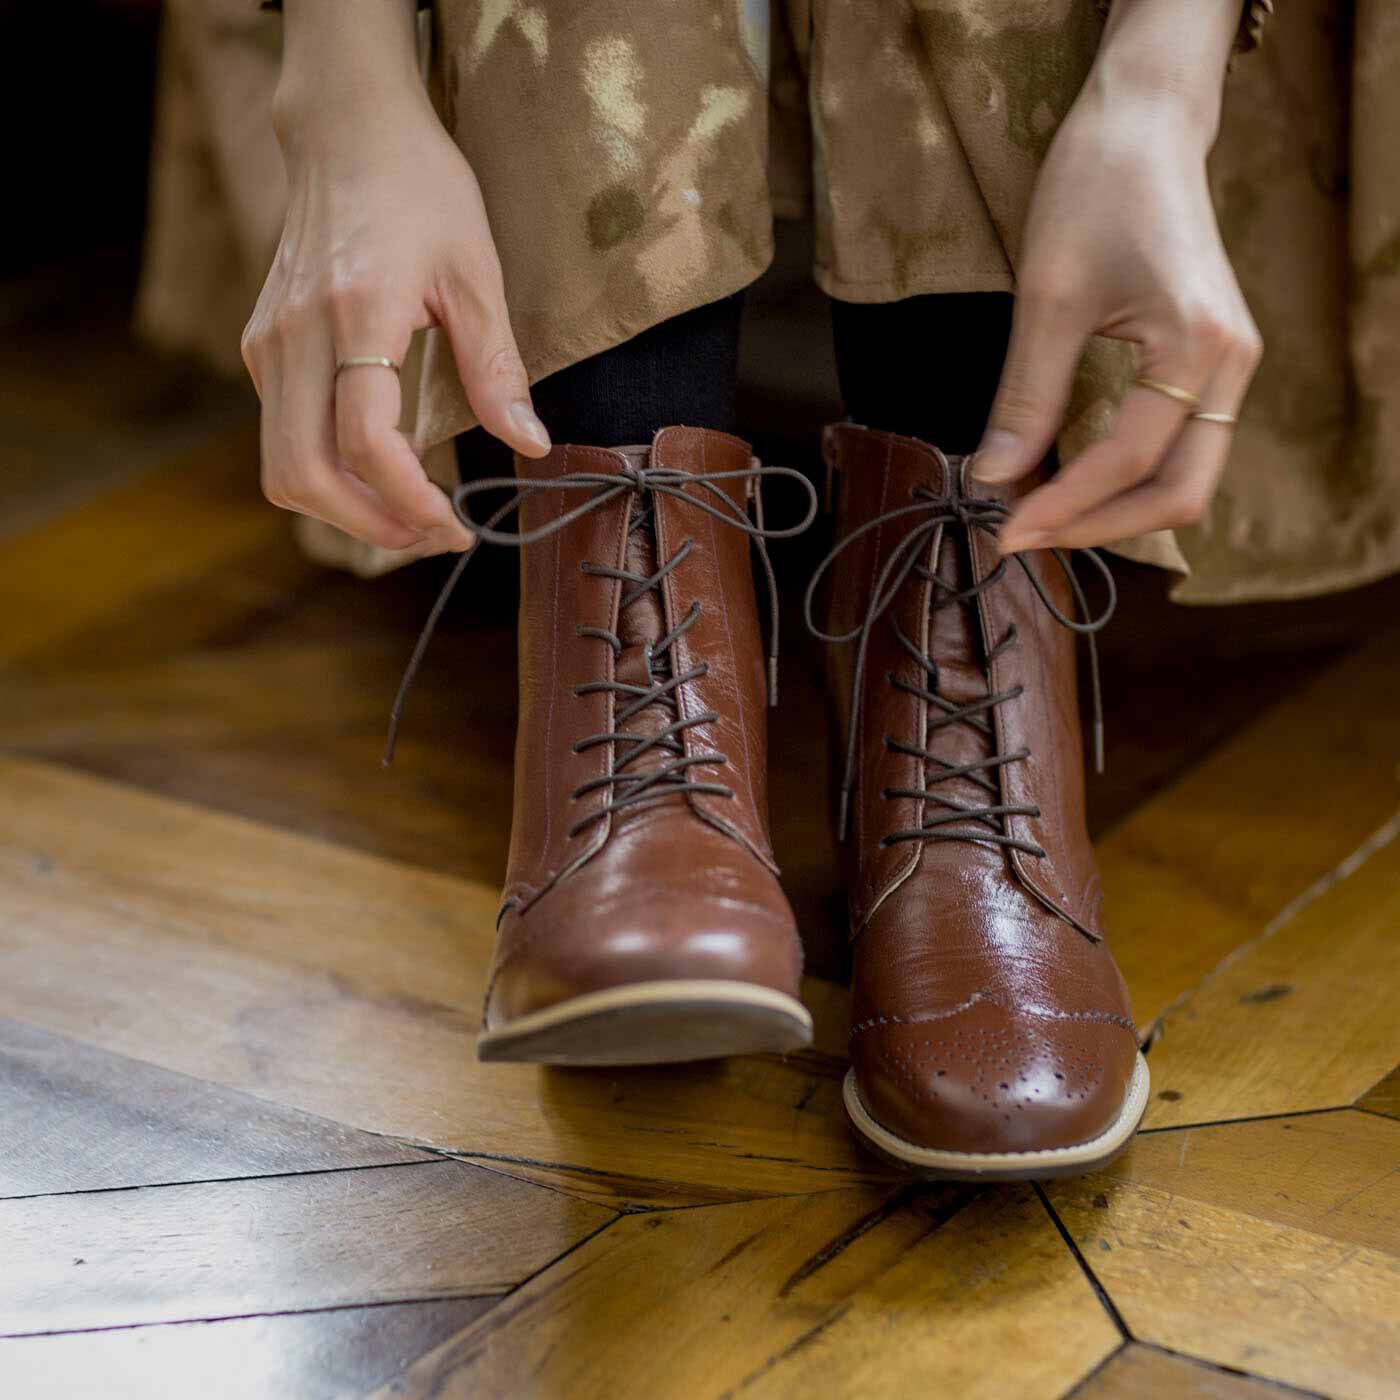 ＆Stories|長田の靴職人が作った　職人本革のウィングチップブーツ〈レッドブラウン〉|履くしぐさまでスマートに美しく見えるのがこだわり。